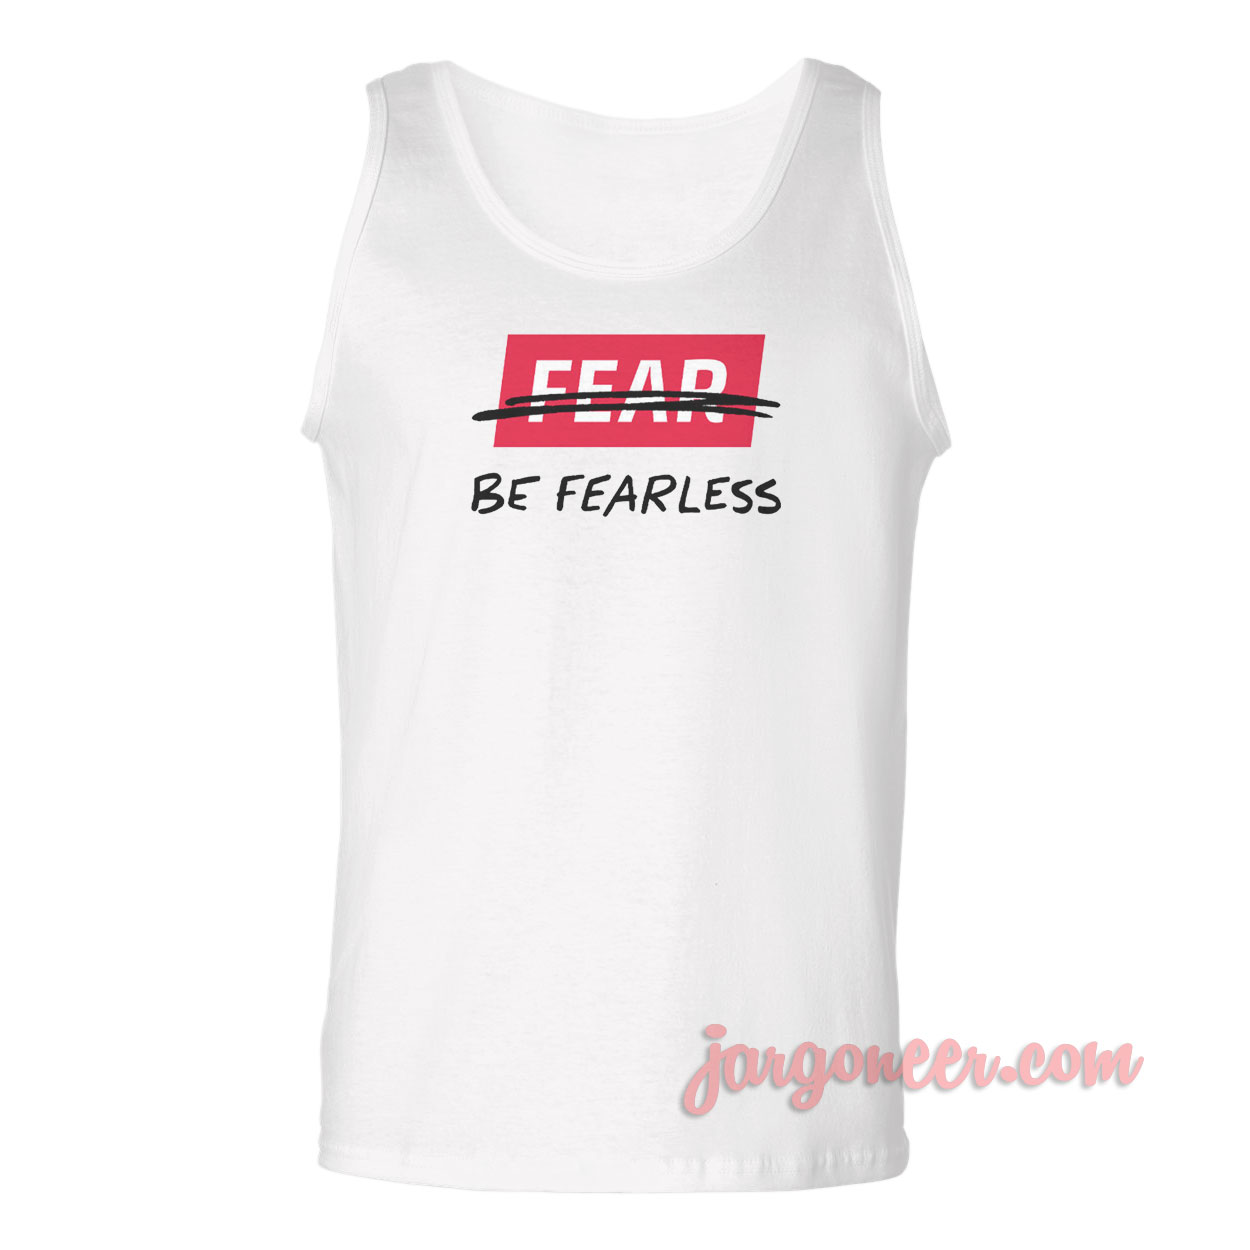 Fearless - Shop Unique Graphic Cool Shirt Designs